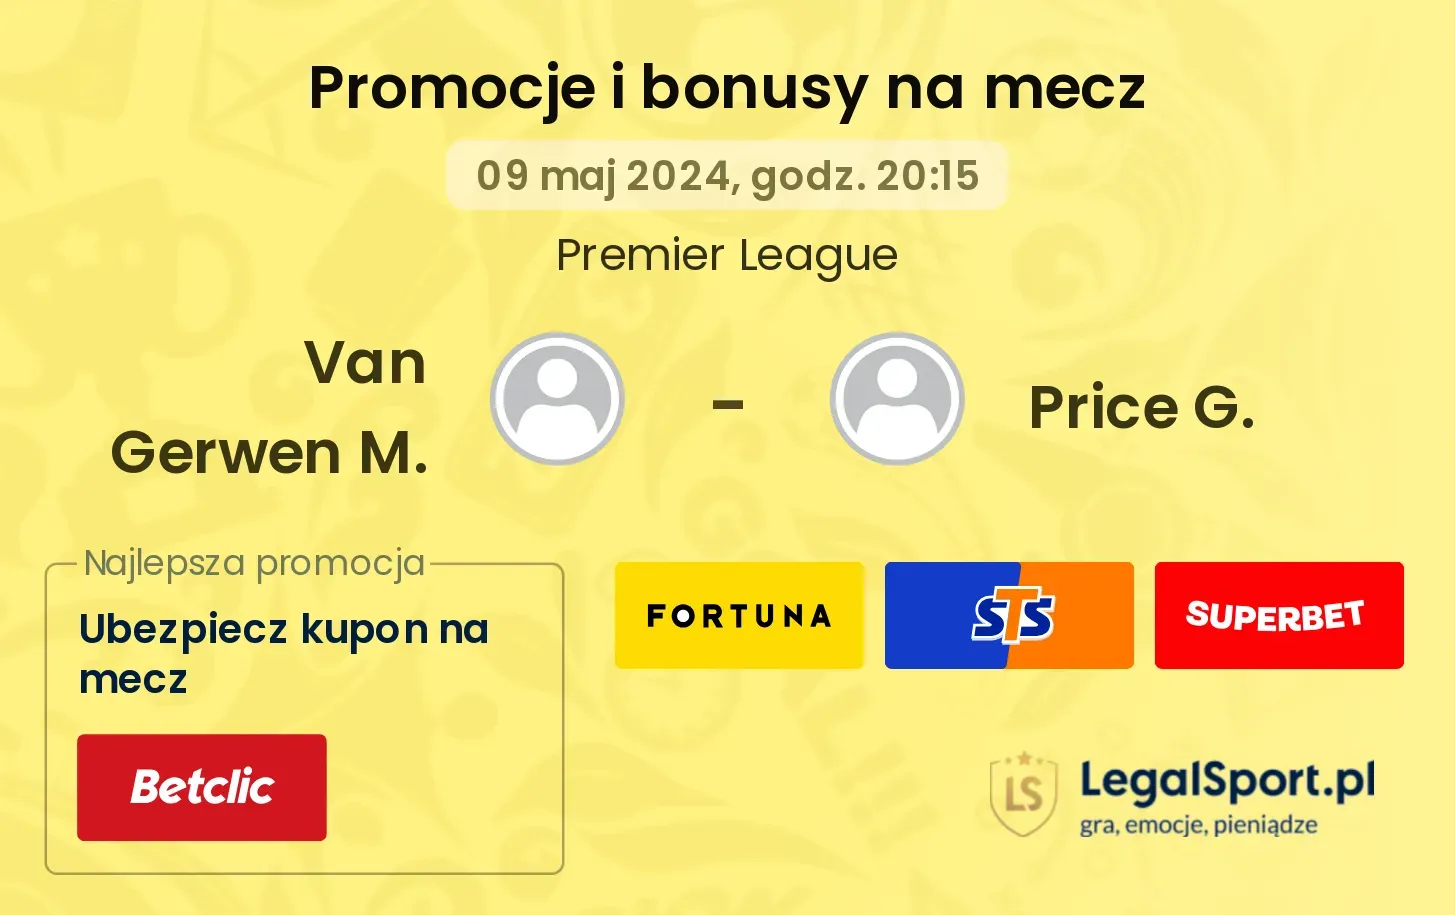 Van Gerwen M. - Price G. promocje bonusy na mecz